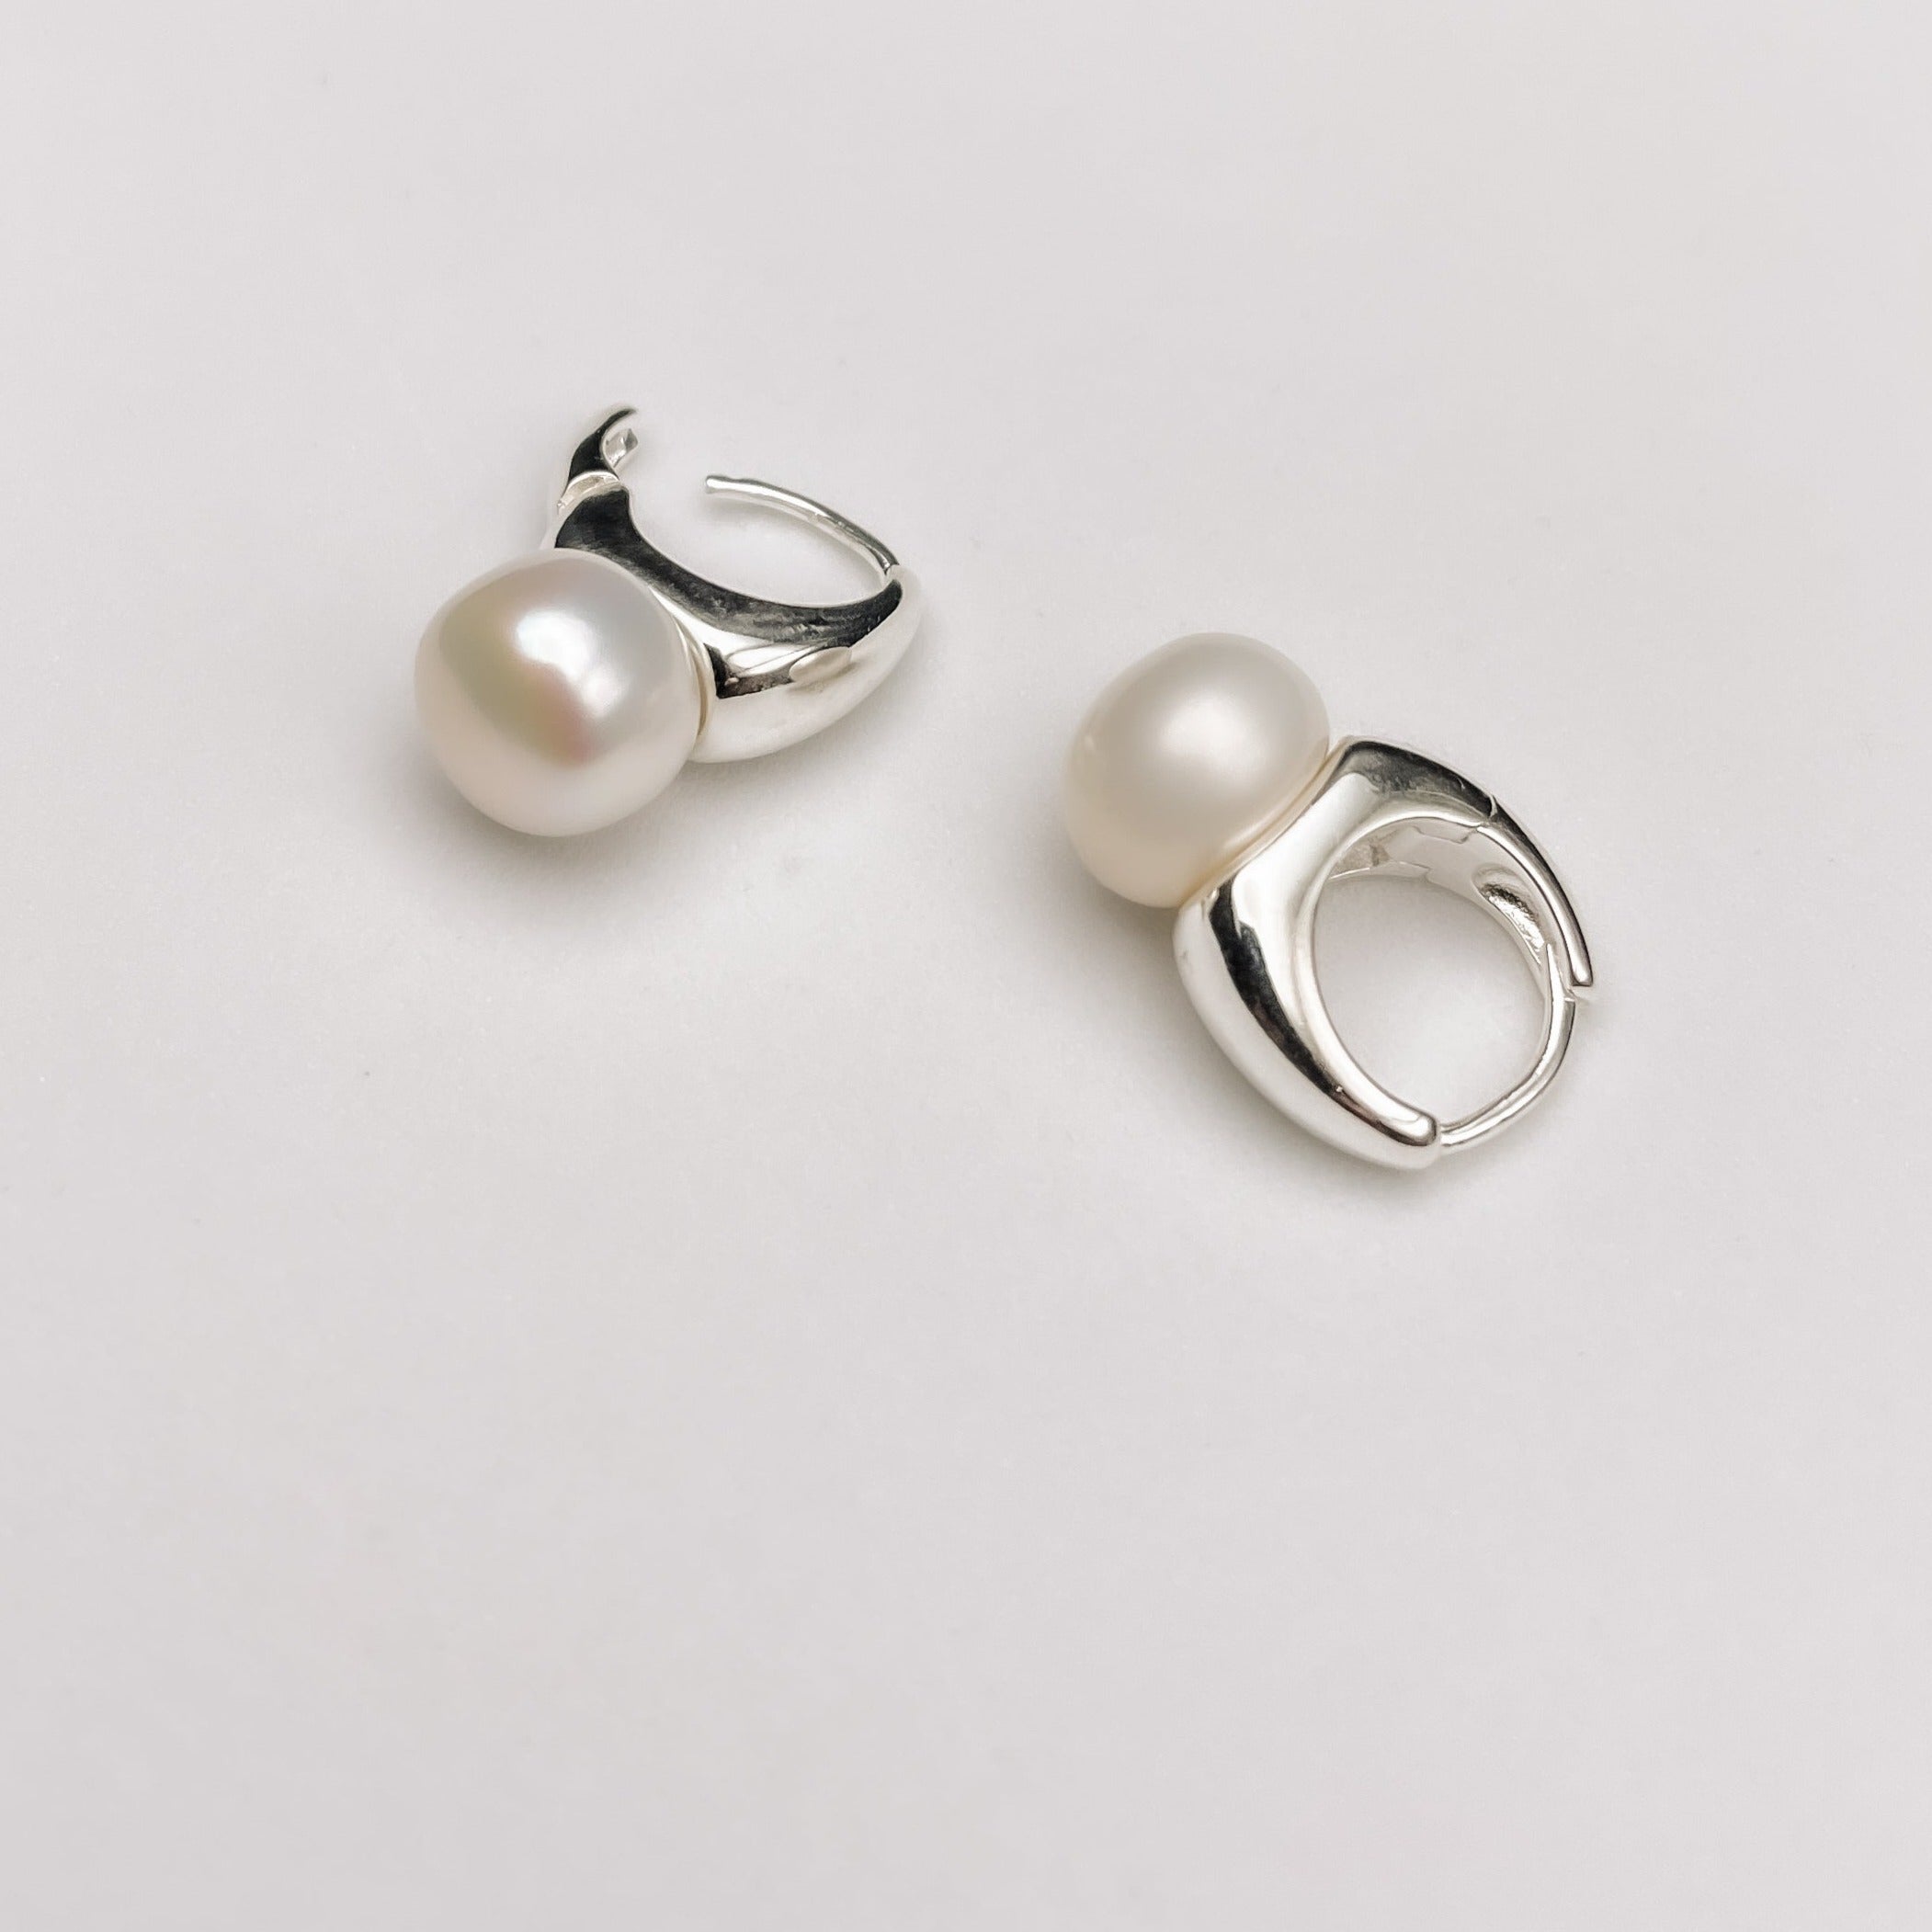 Pearl huggie hoops earrings BlackSugar-Best Online Jewelry Shop Earrings, Necklaces, Rings, Bracelets Located West Los Angeles 